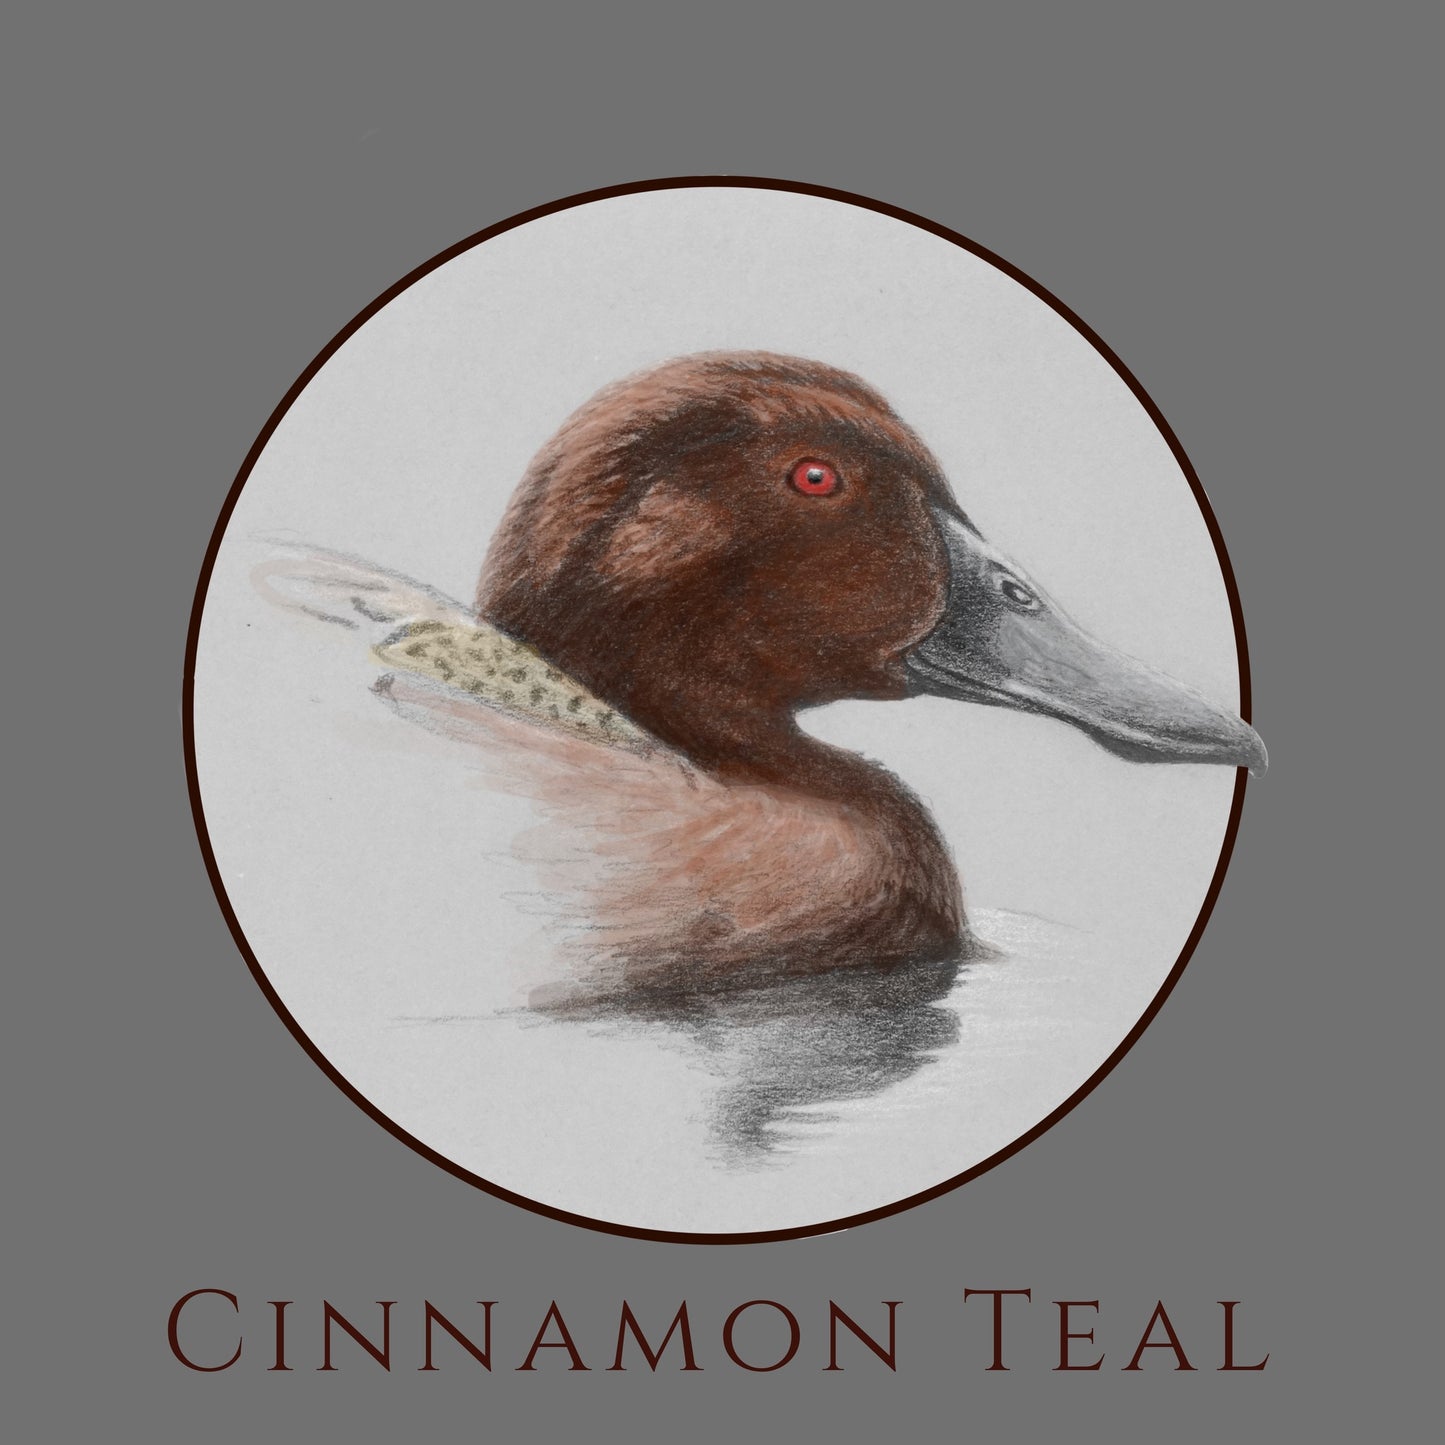 Cinnamon Teal